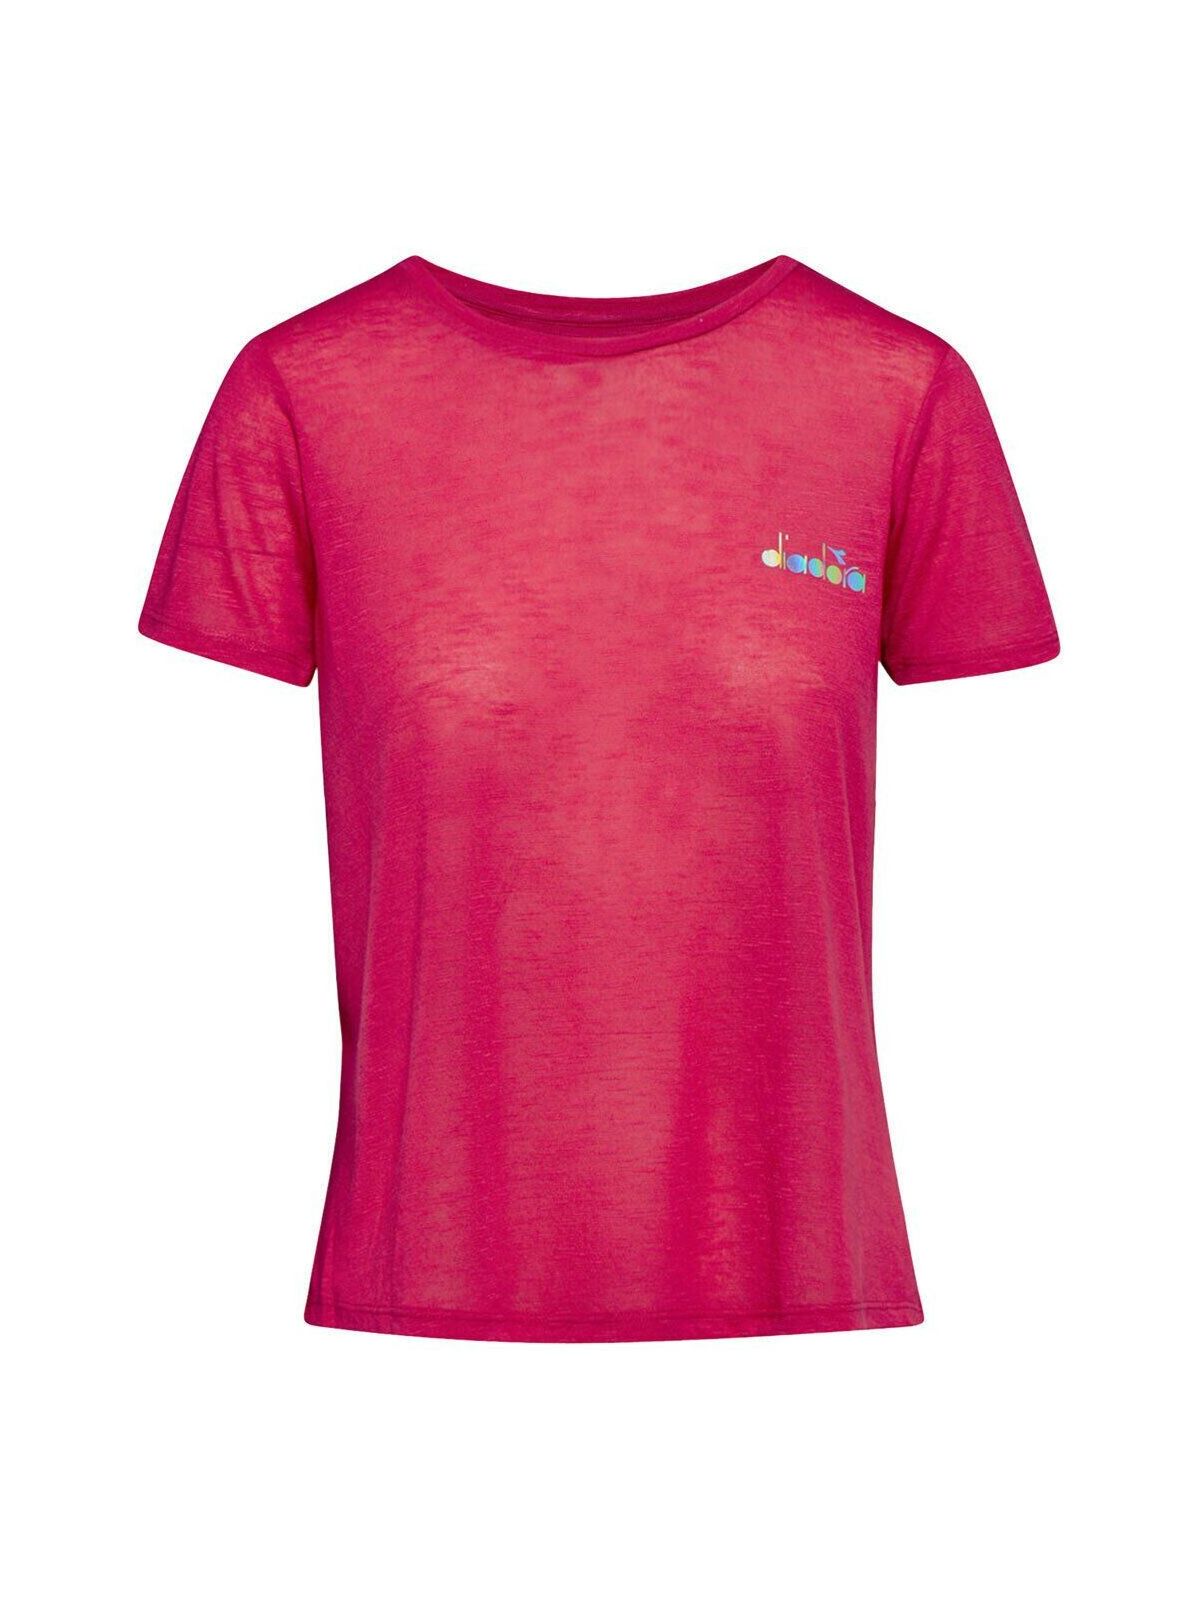 Футболка женская Diadora L. Ss T-Shirt Workout красная S